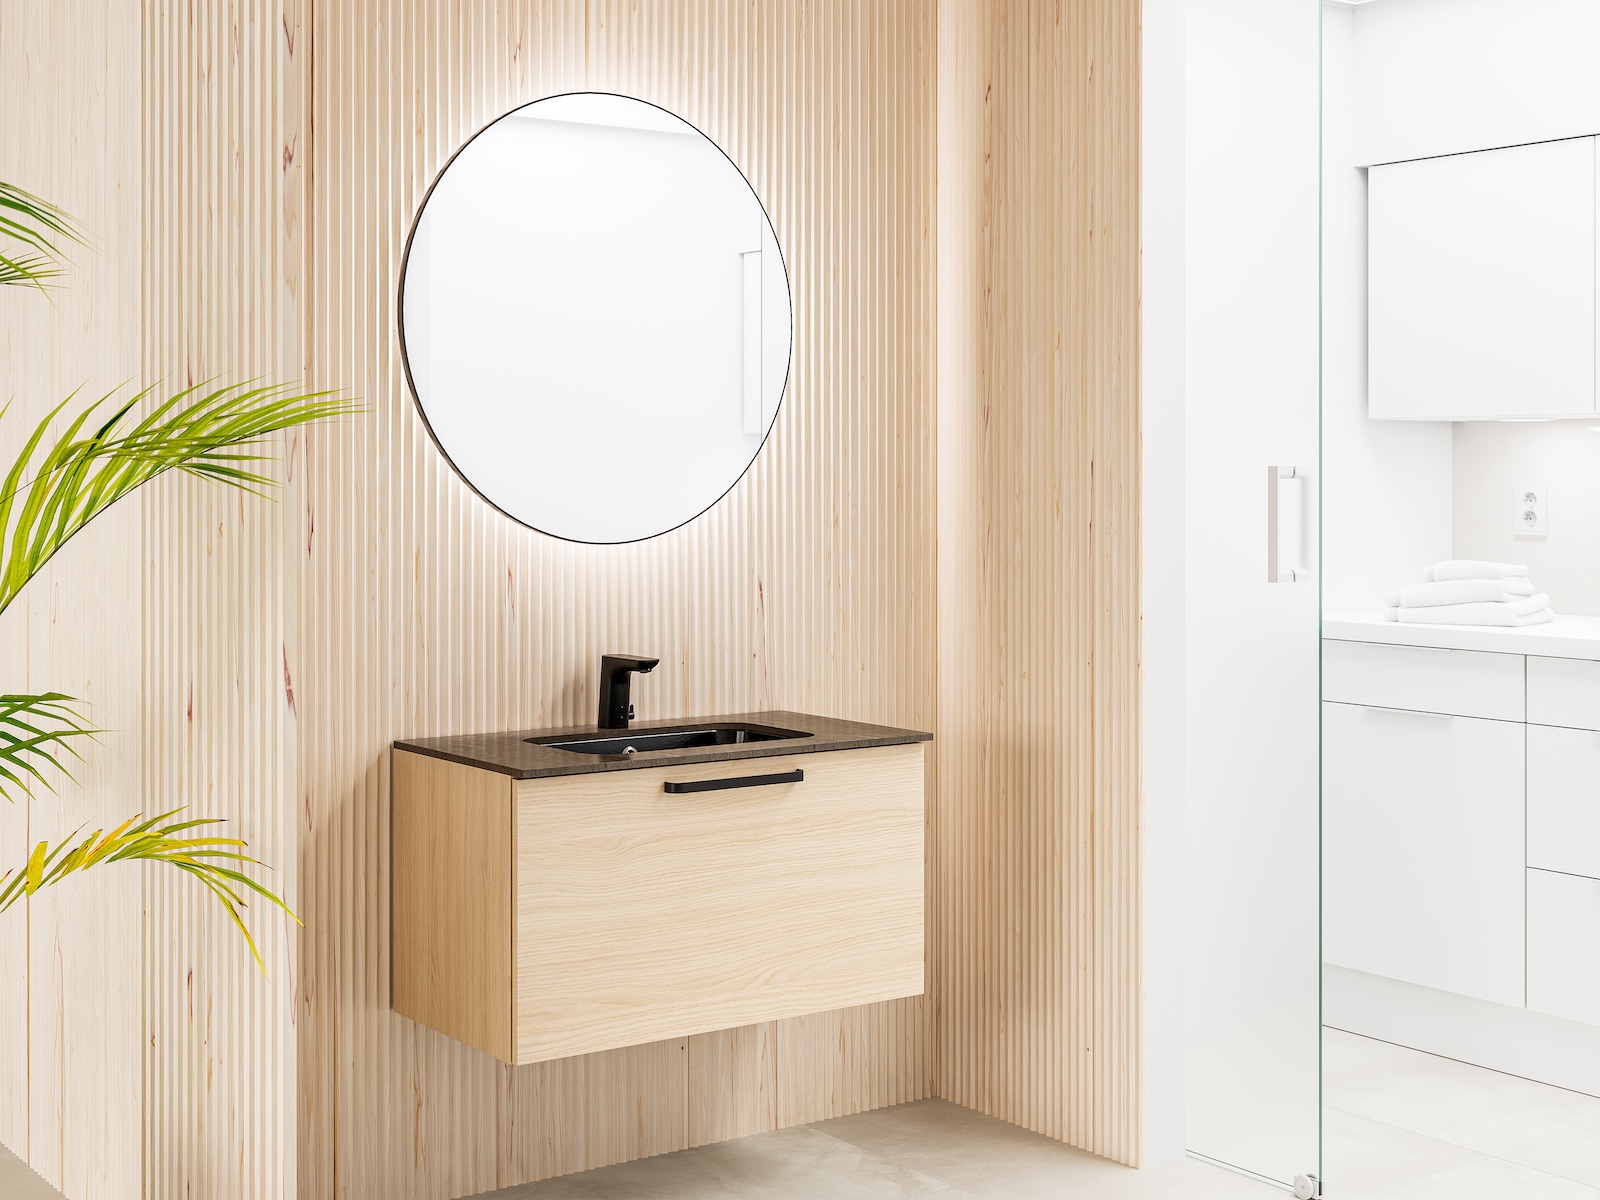 Temal kylpyhuone, Design, musta allas, musta hana, pyöreä peili, tamminen allaskaappi, vaalea kylpyhuone